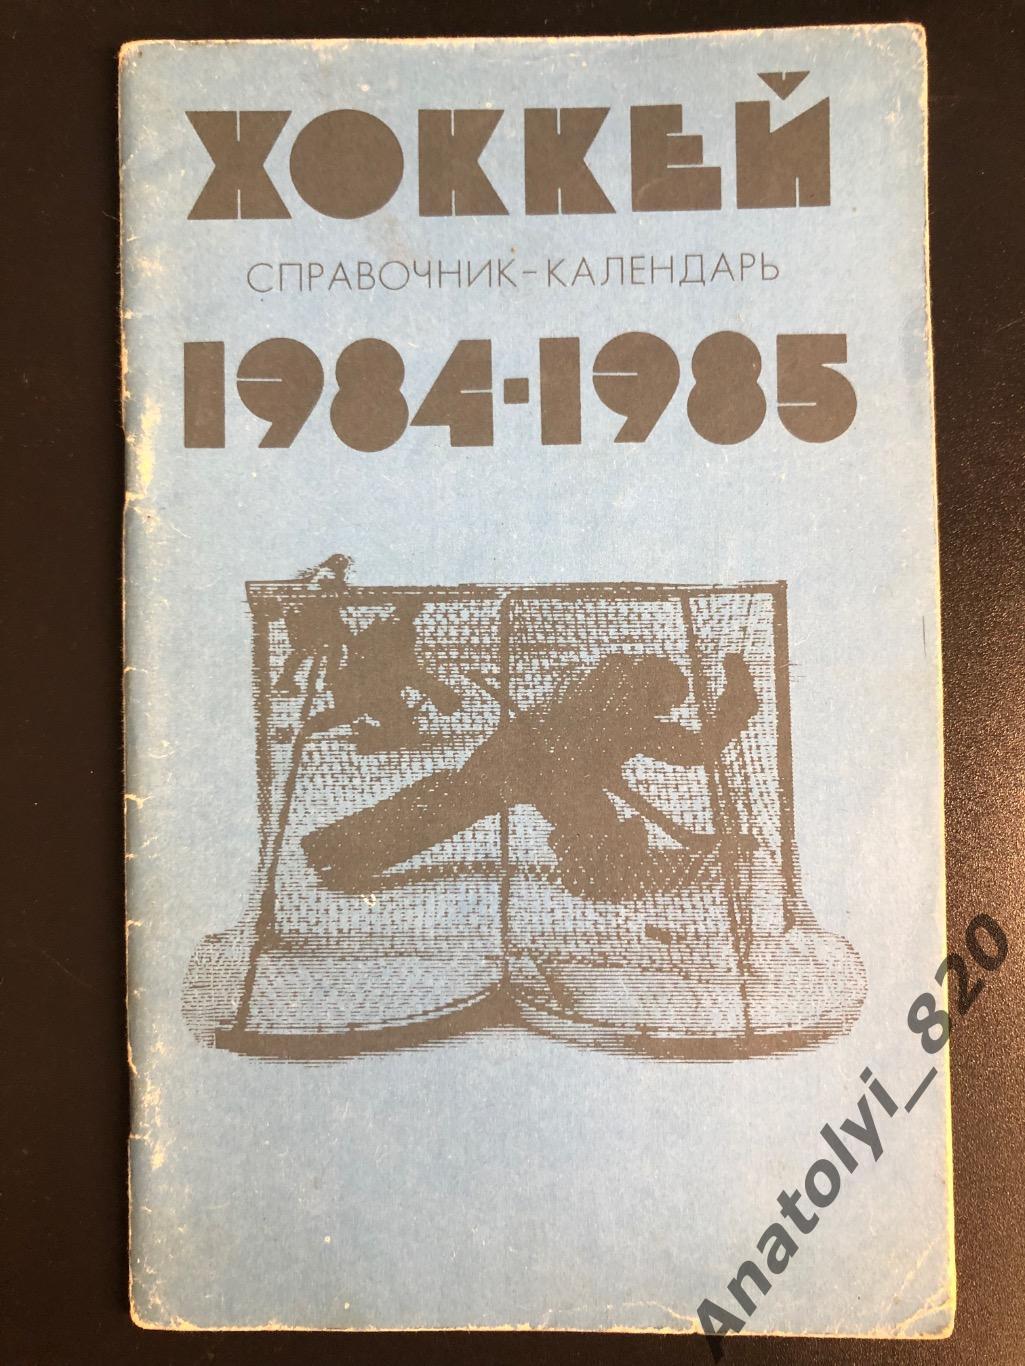 Хоккей. Календарь - справочник Москва 1984/1985 гг.